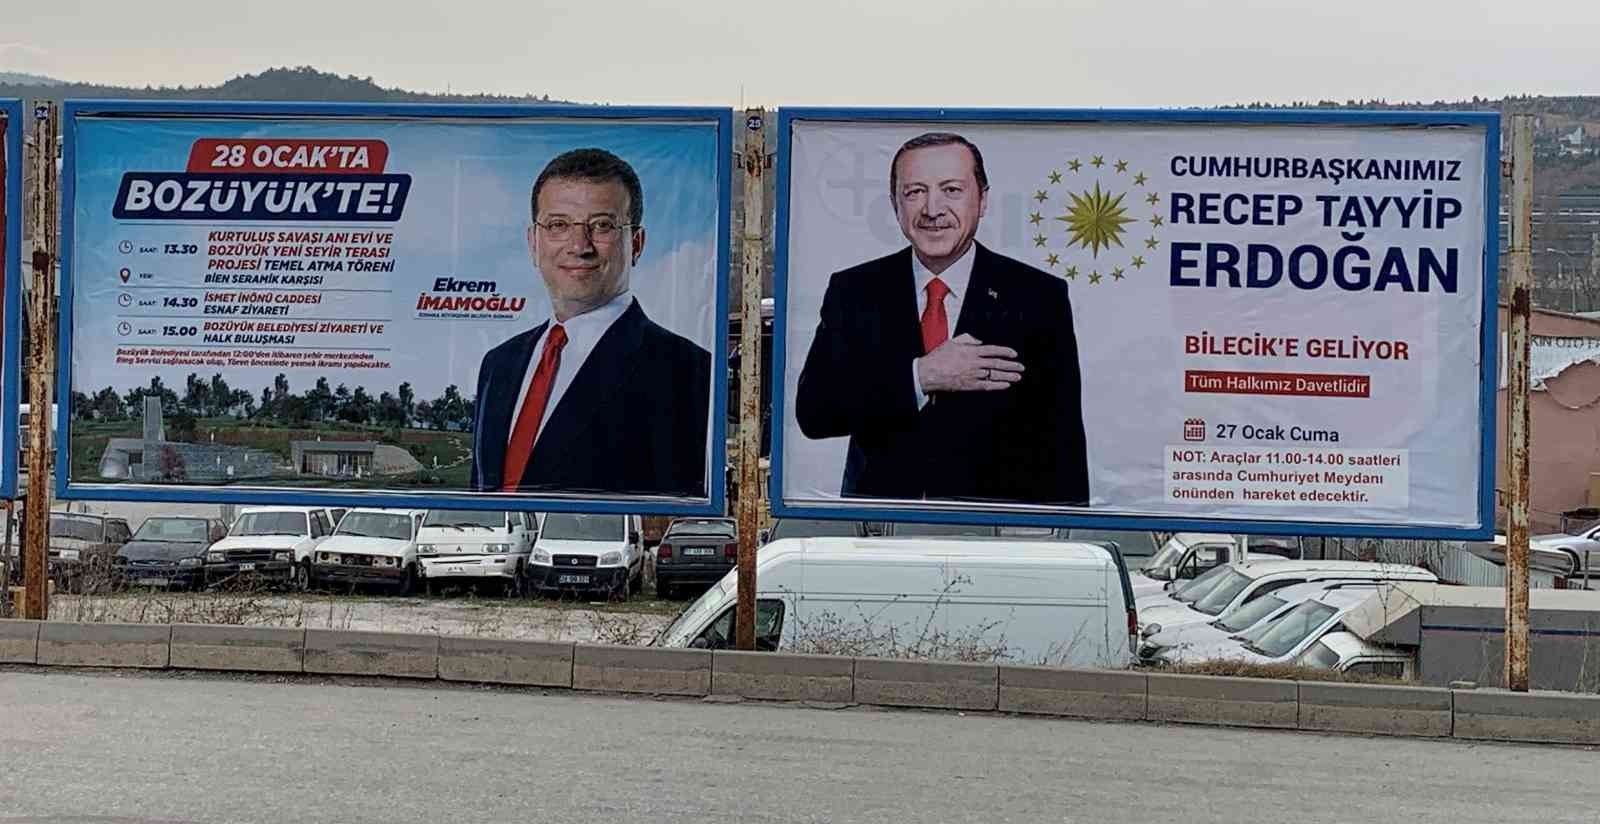 Aynı bilboardlarda Erdoğan ve İmamoğlu’nun fotoğrafları yan yana